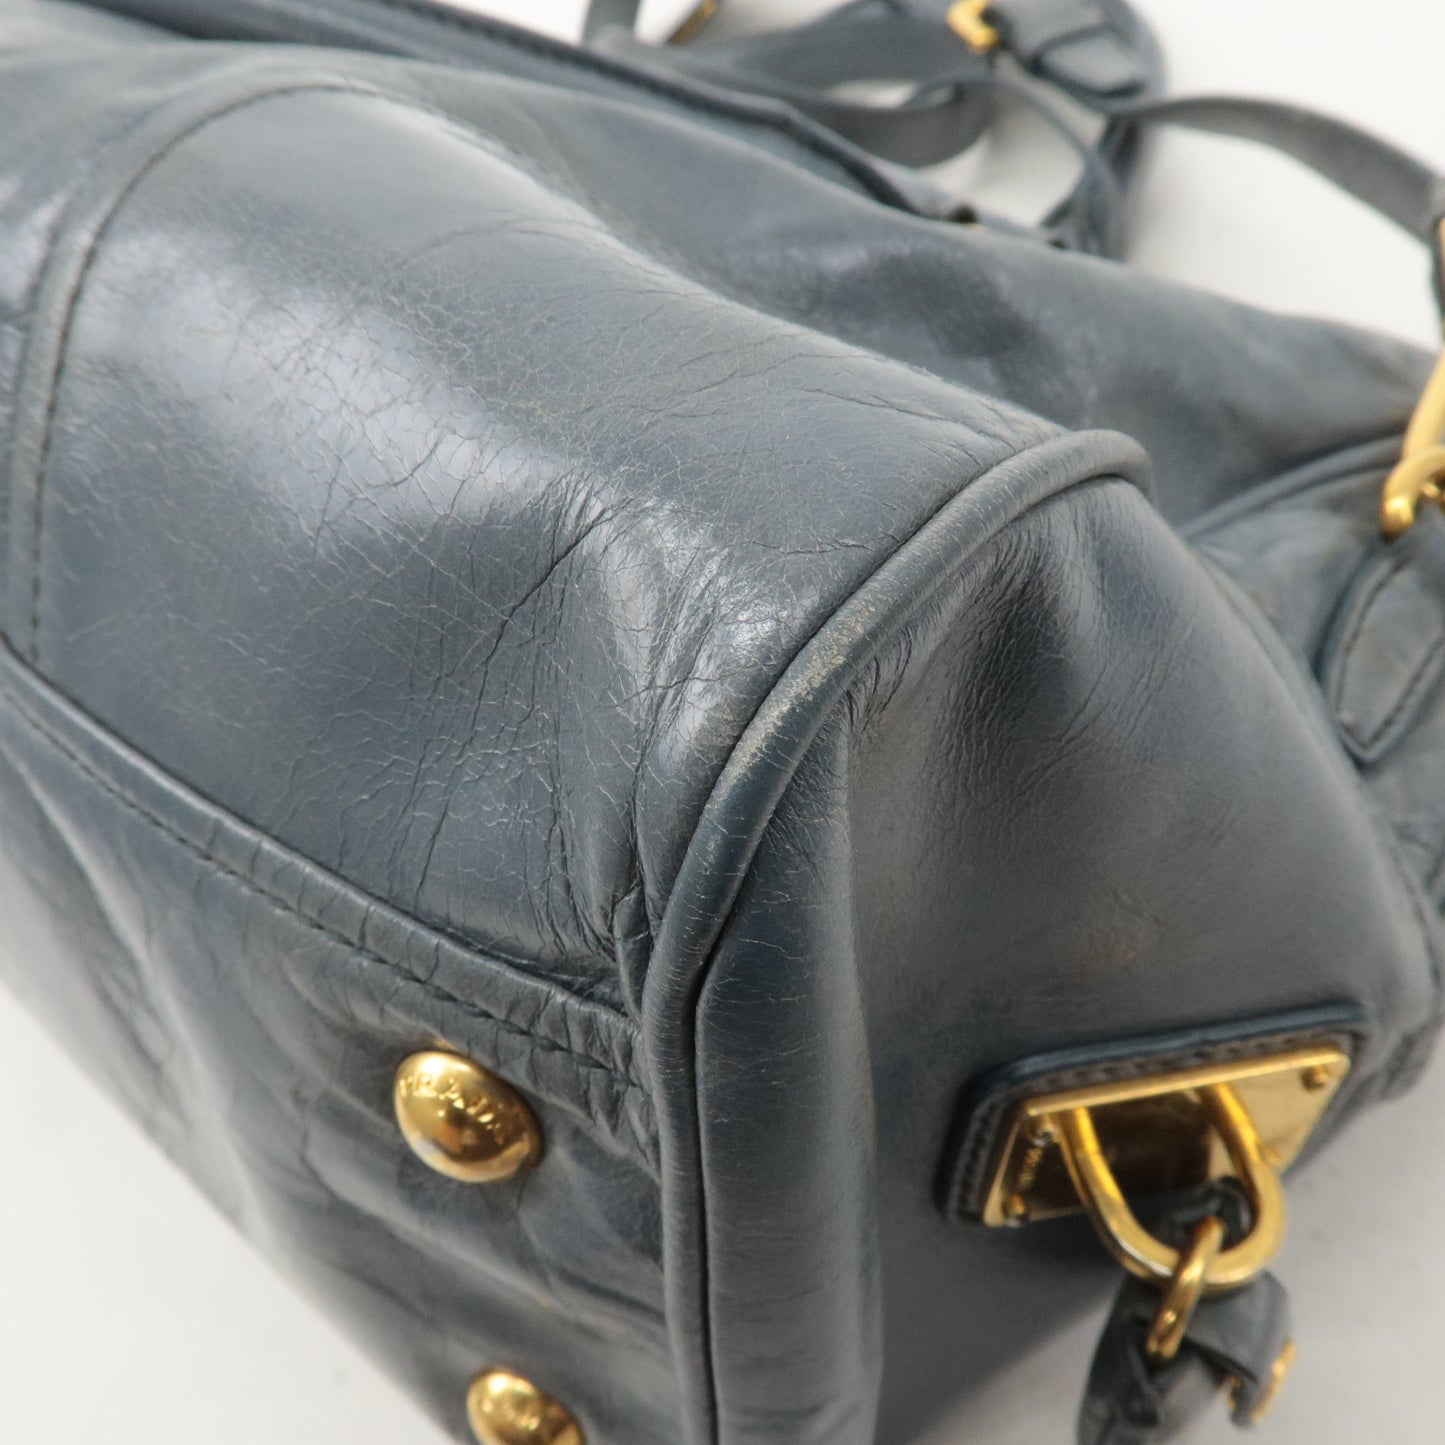 PRADA Leather 2Way Bag Hand Bag Shoulder Bag Light Blue